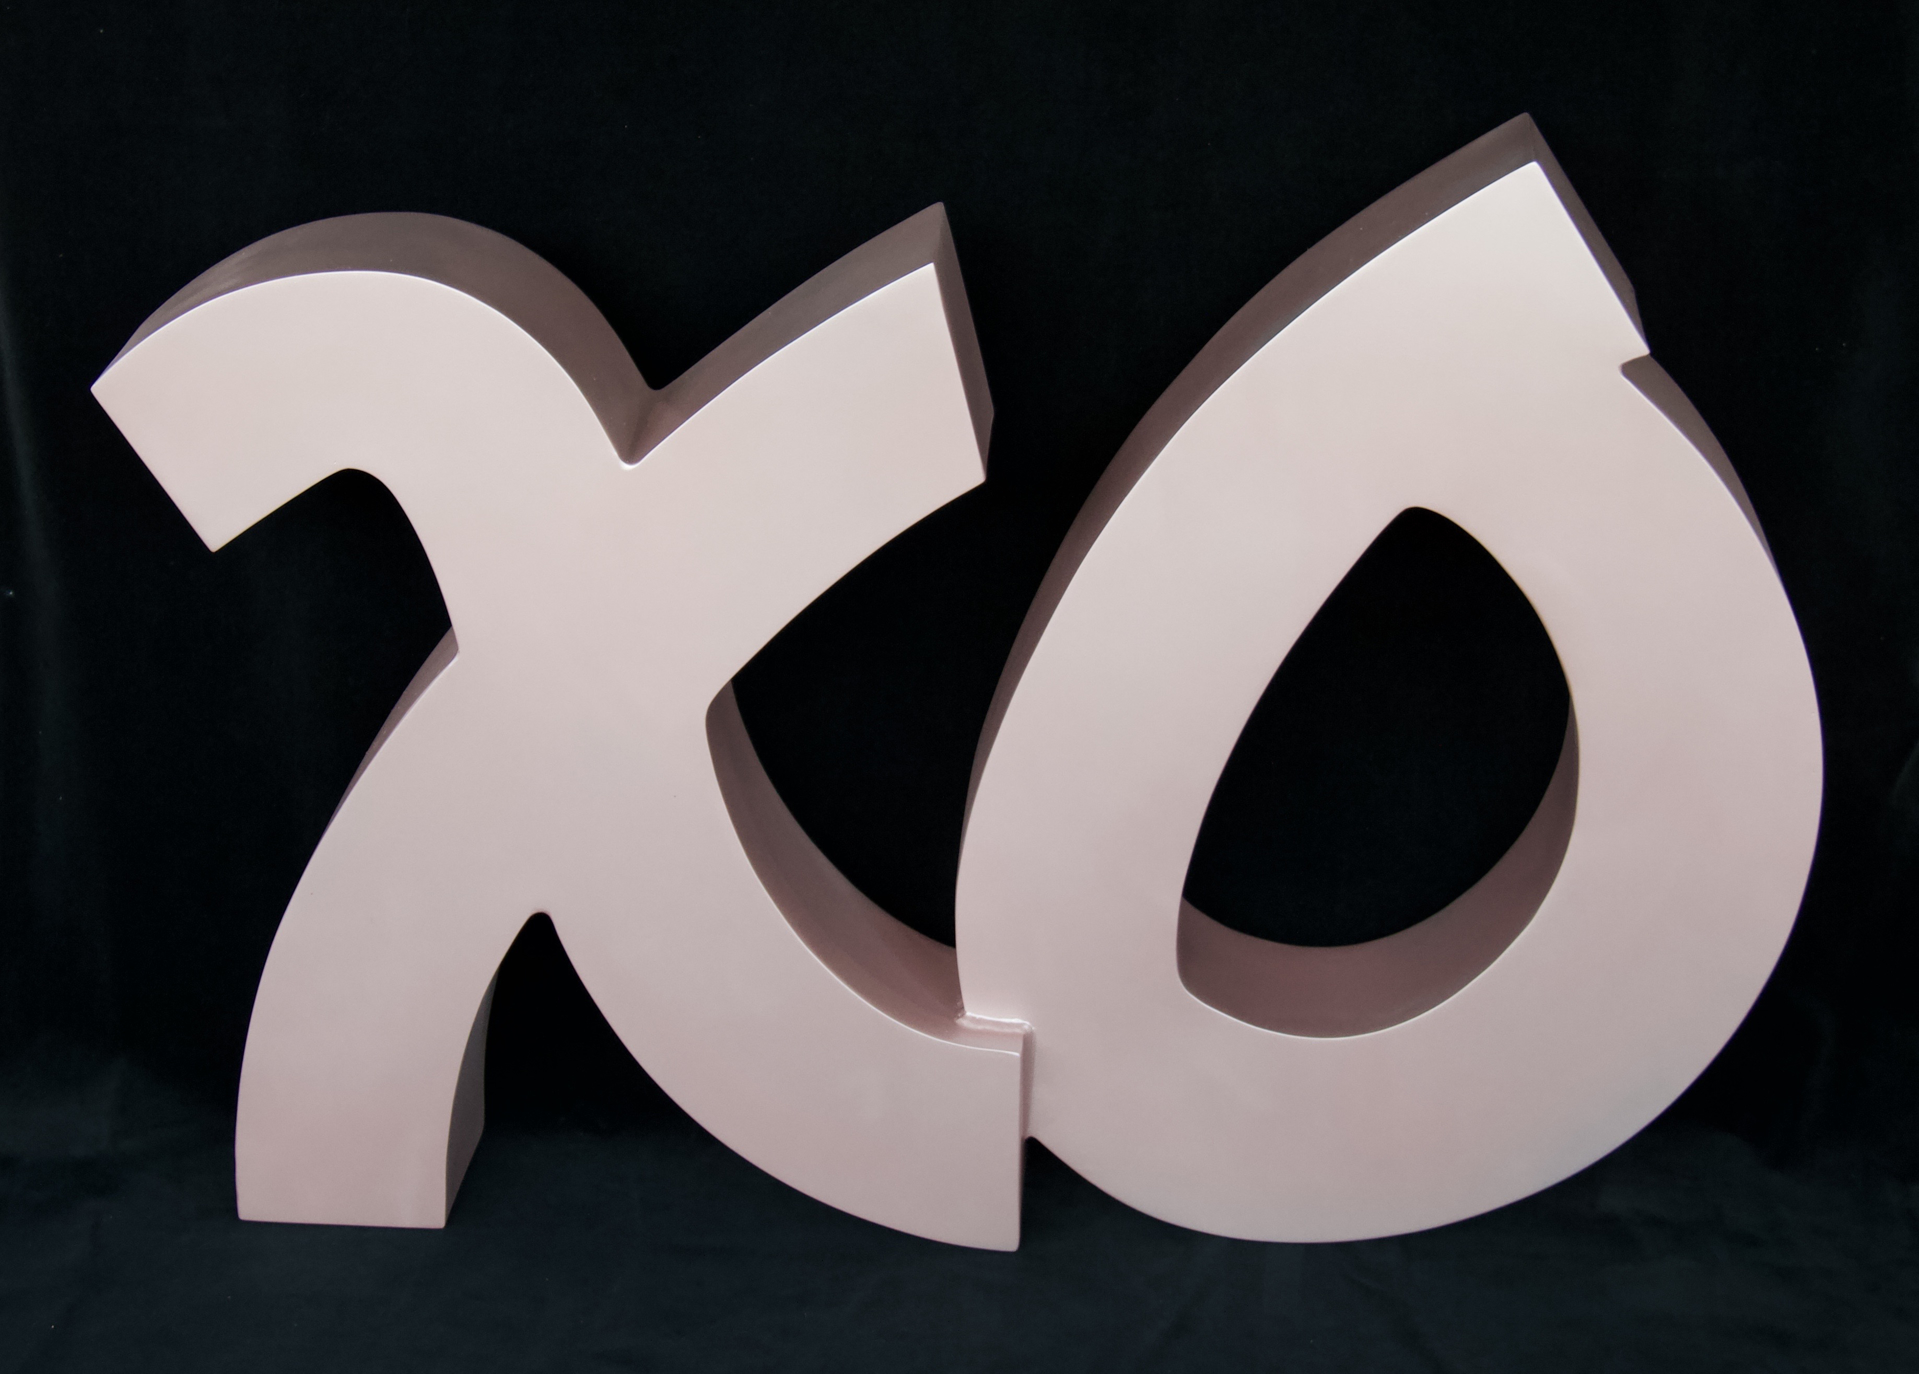 XO Sculpture by Tara Conley